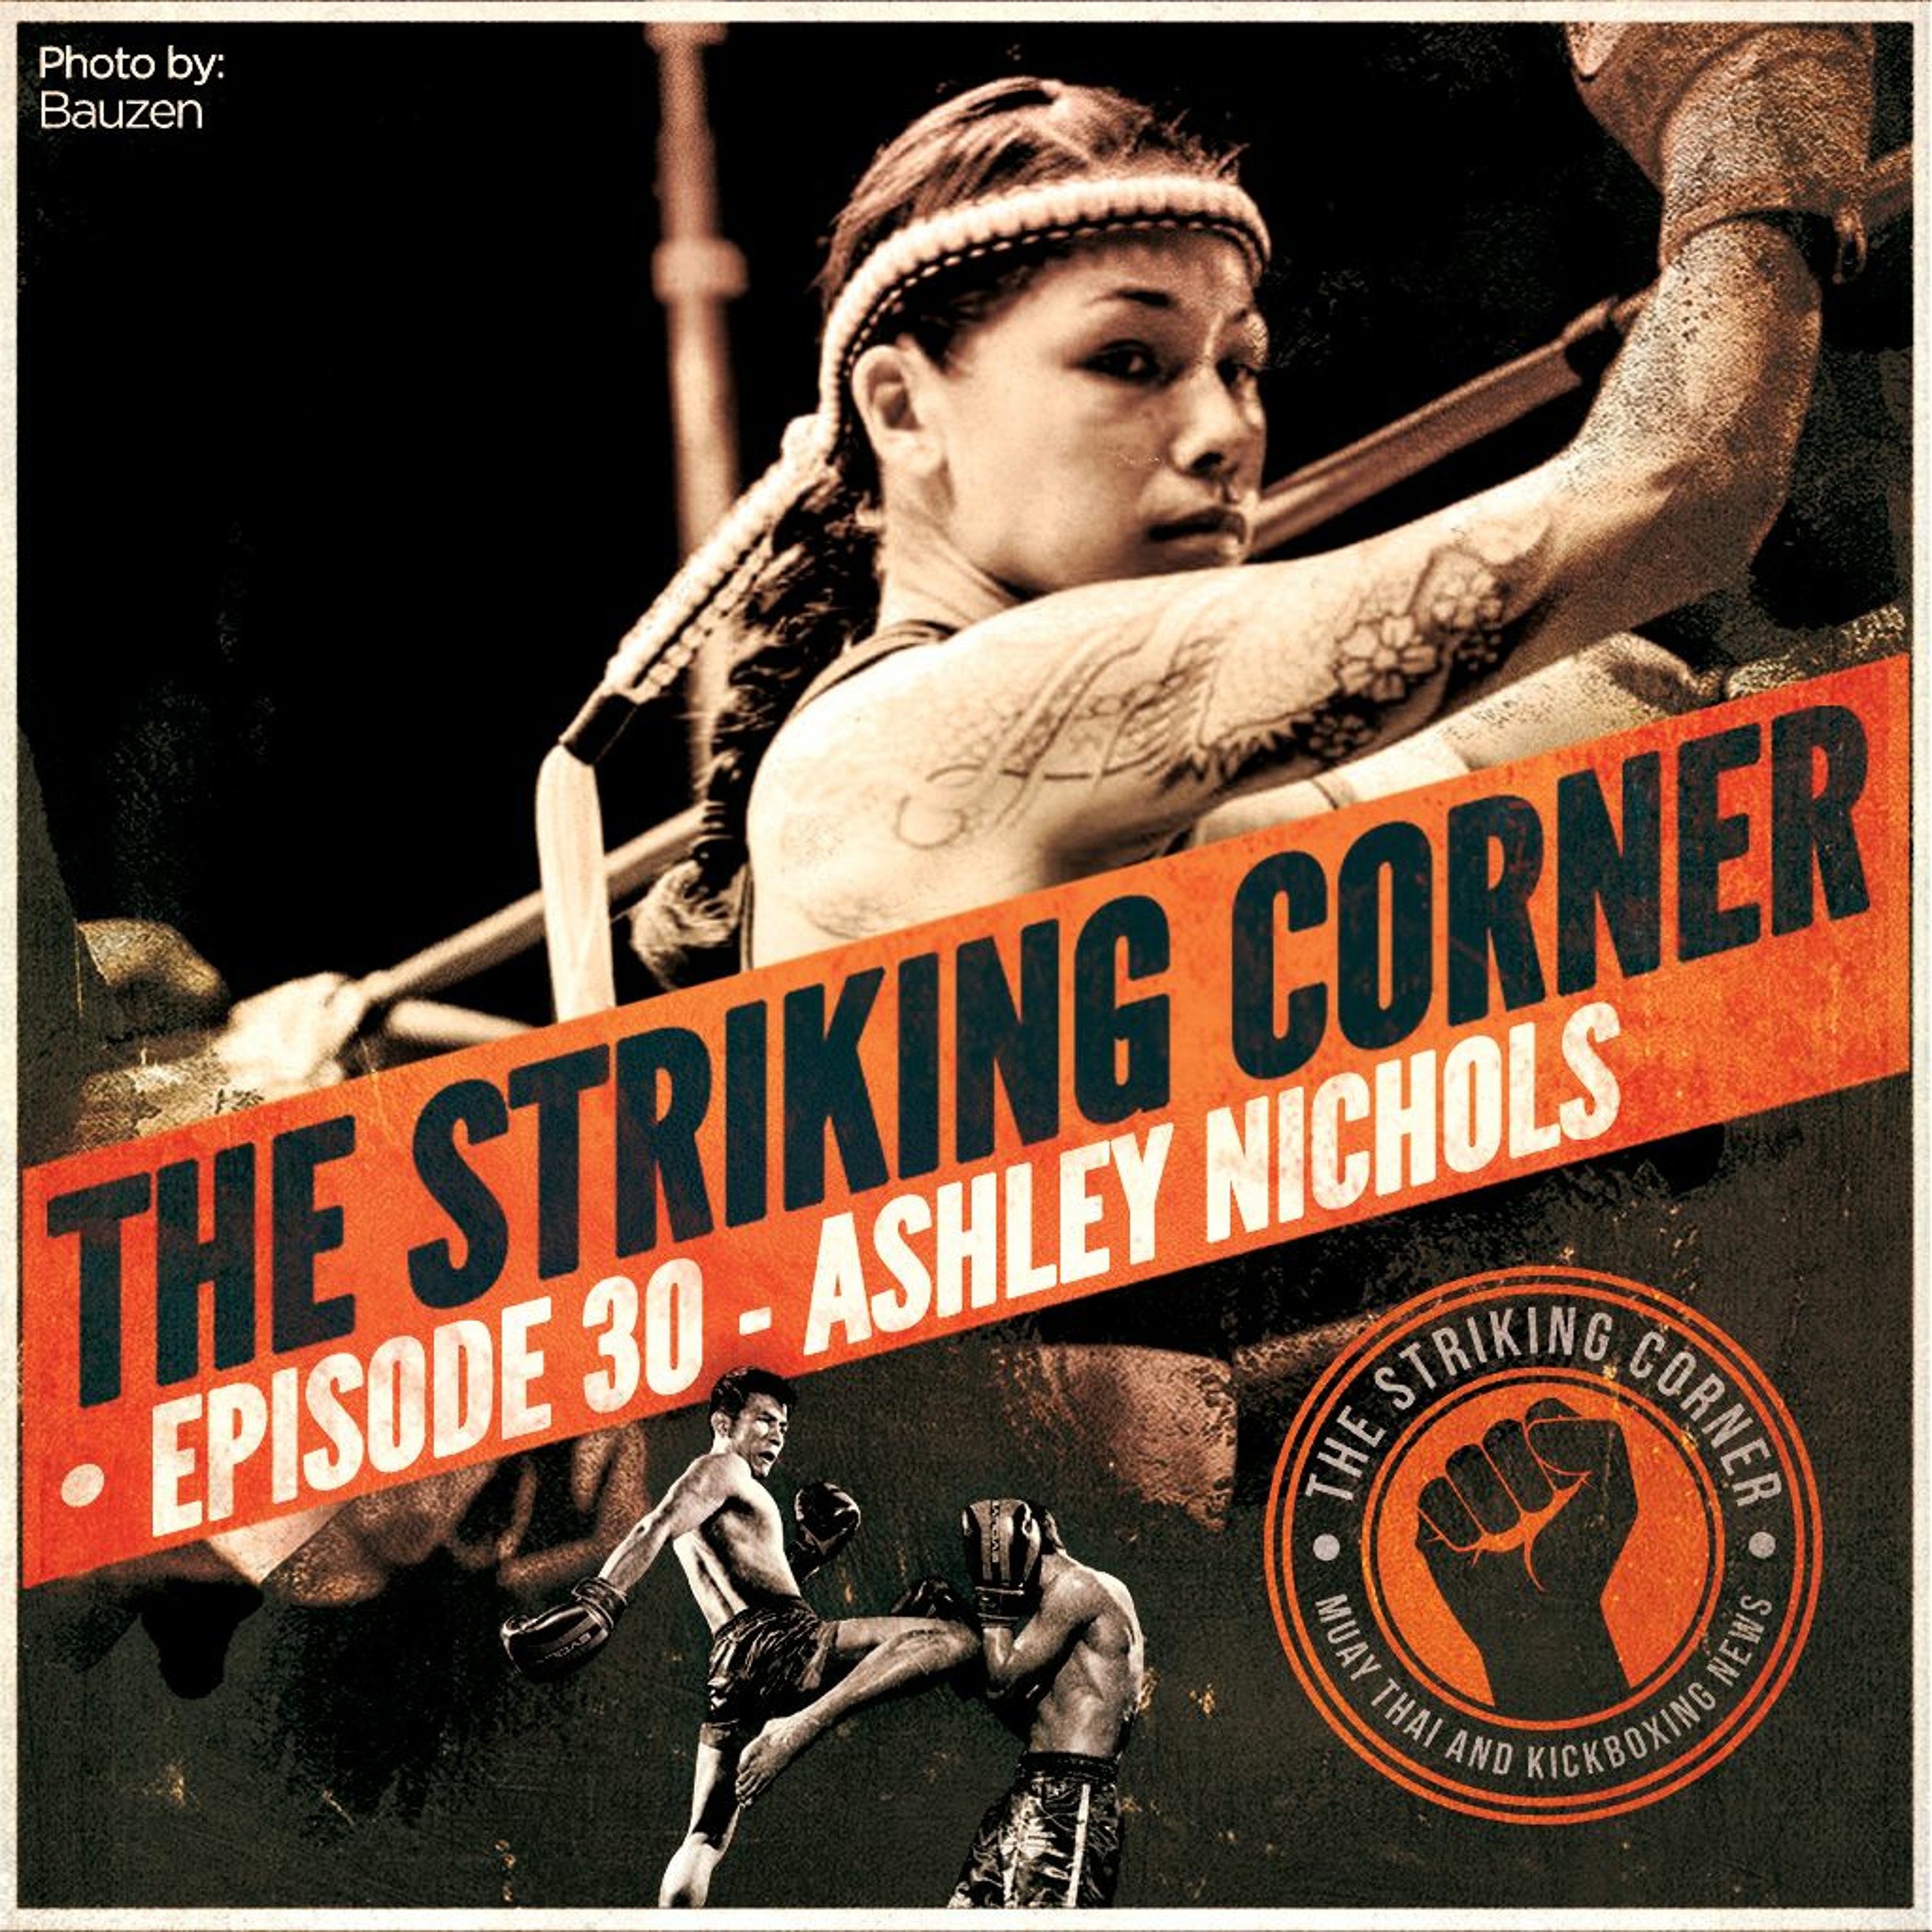 Ep. 30 feat. Ashley Nichols